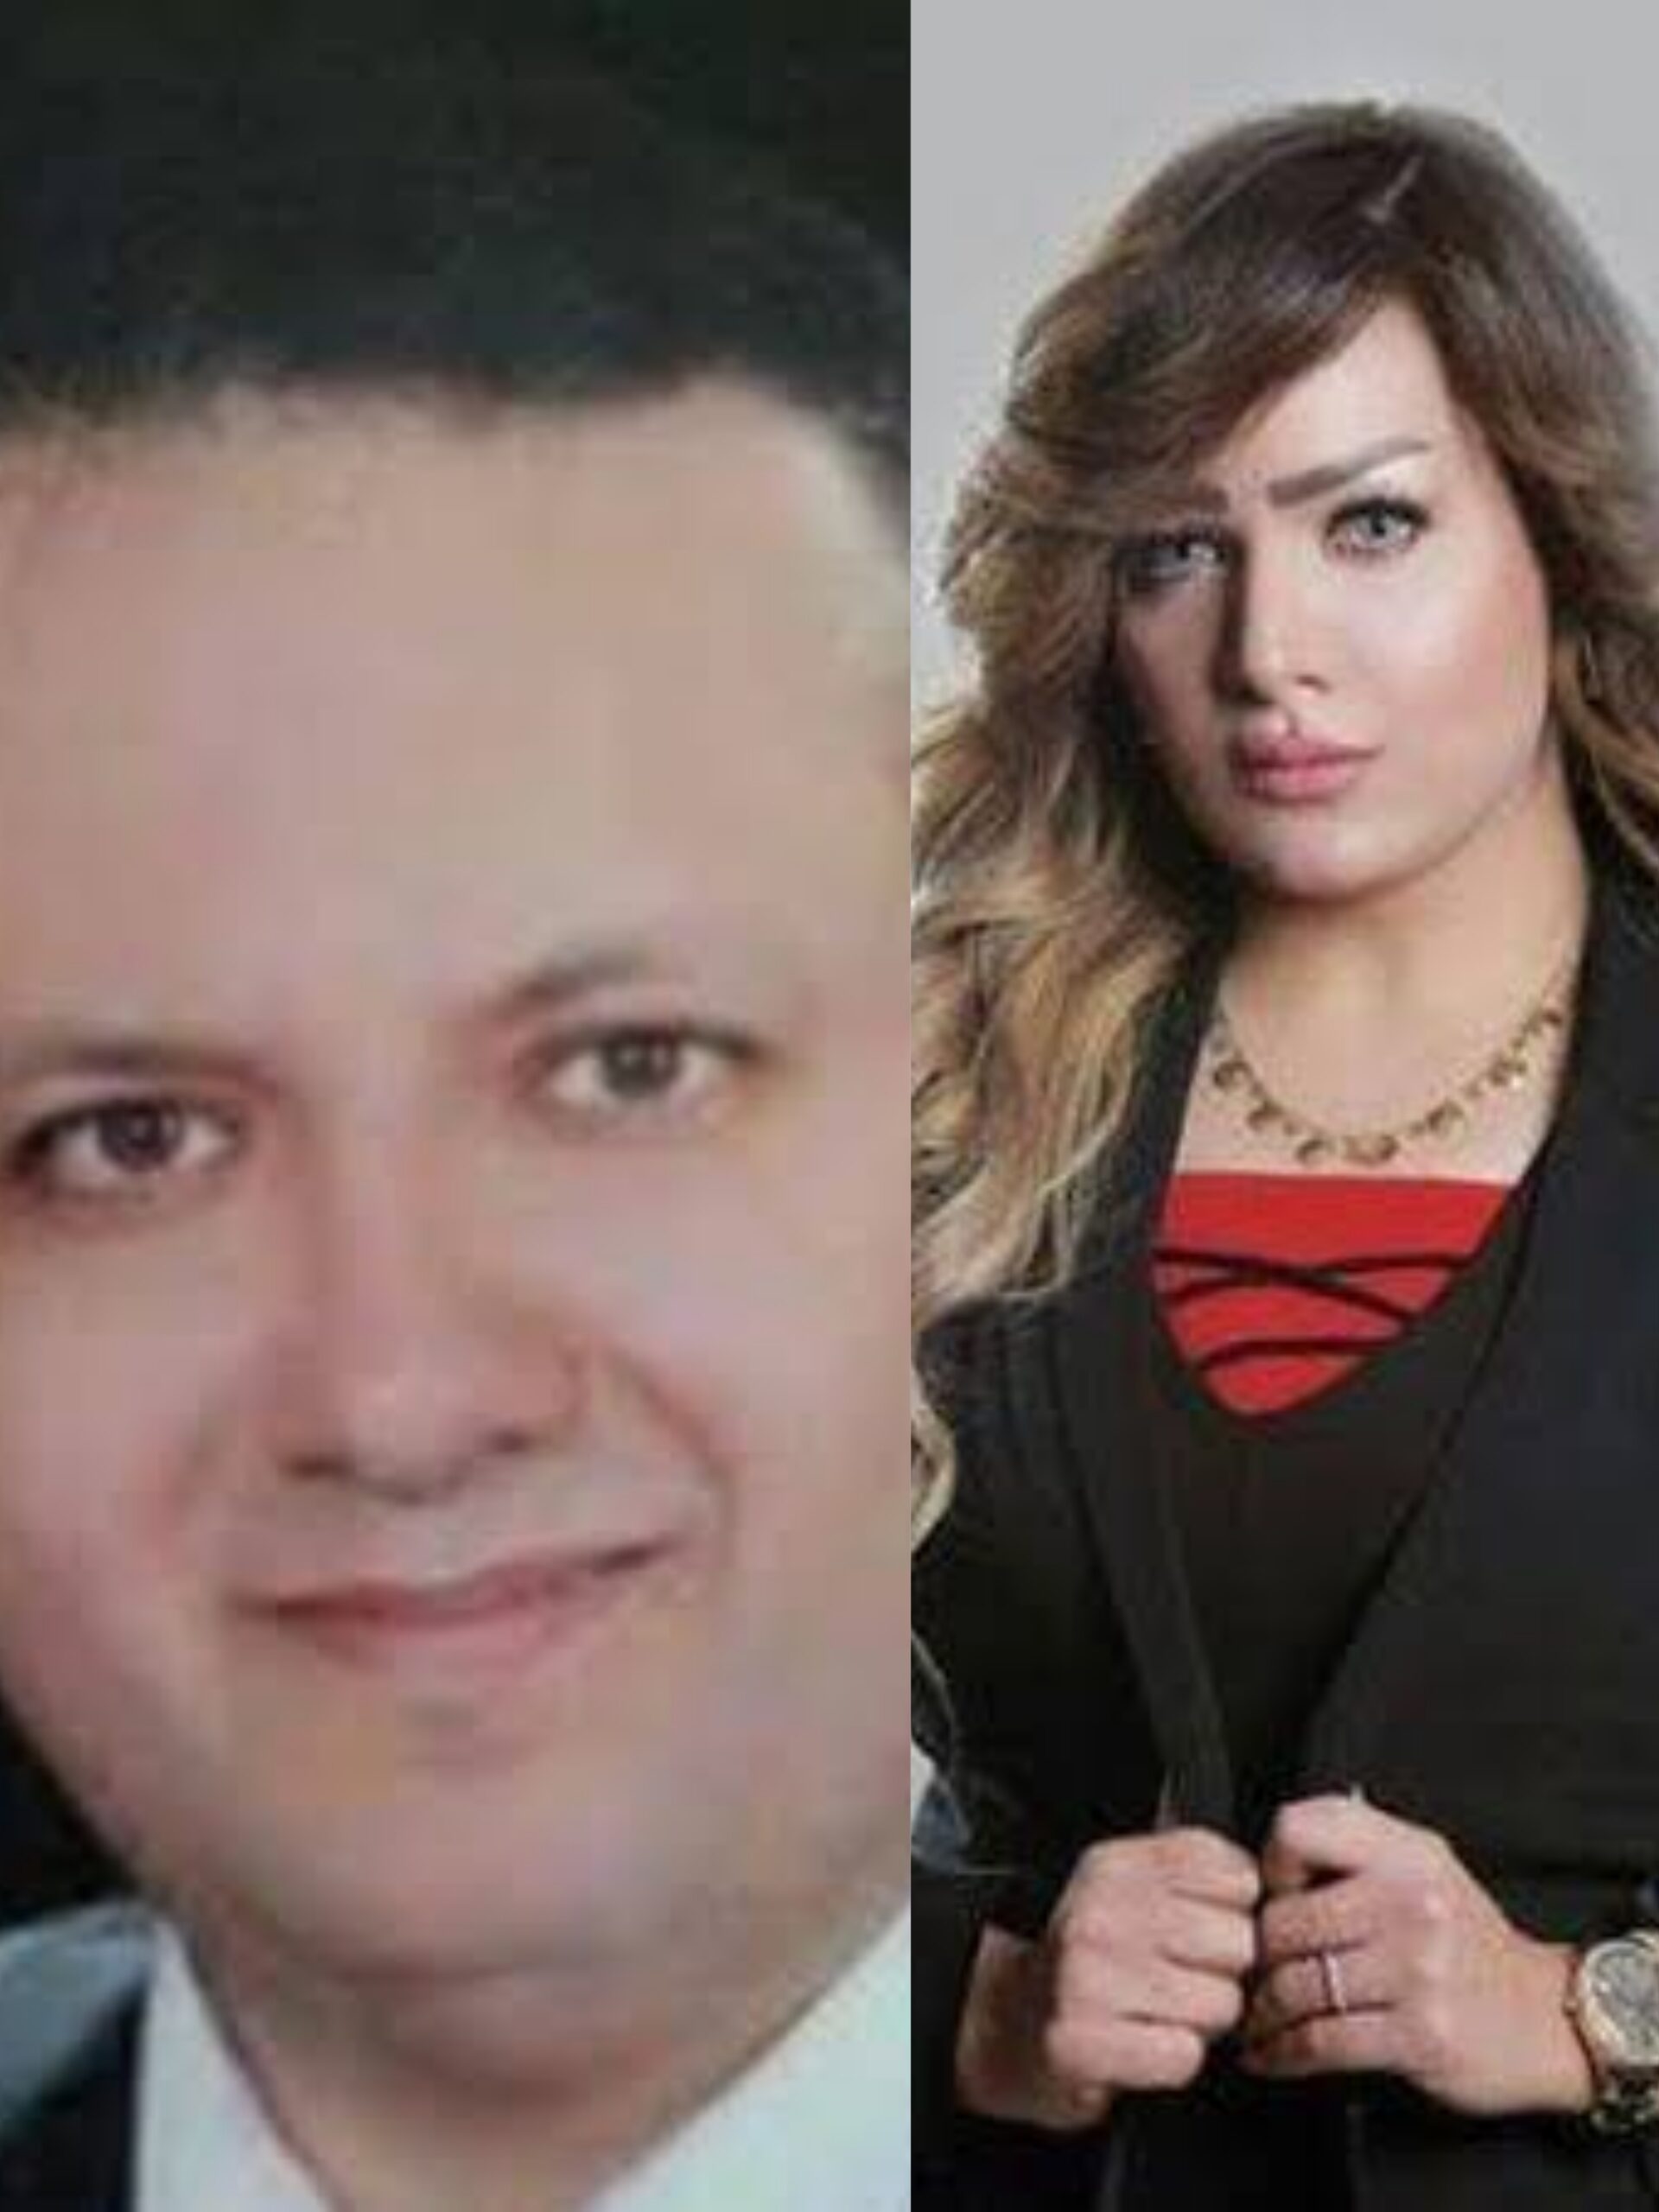 صورة رشاوى وفيديوهات جنسية.. مفاجآت جديدة بقضية مقتل المذيعة شيماء جمال